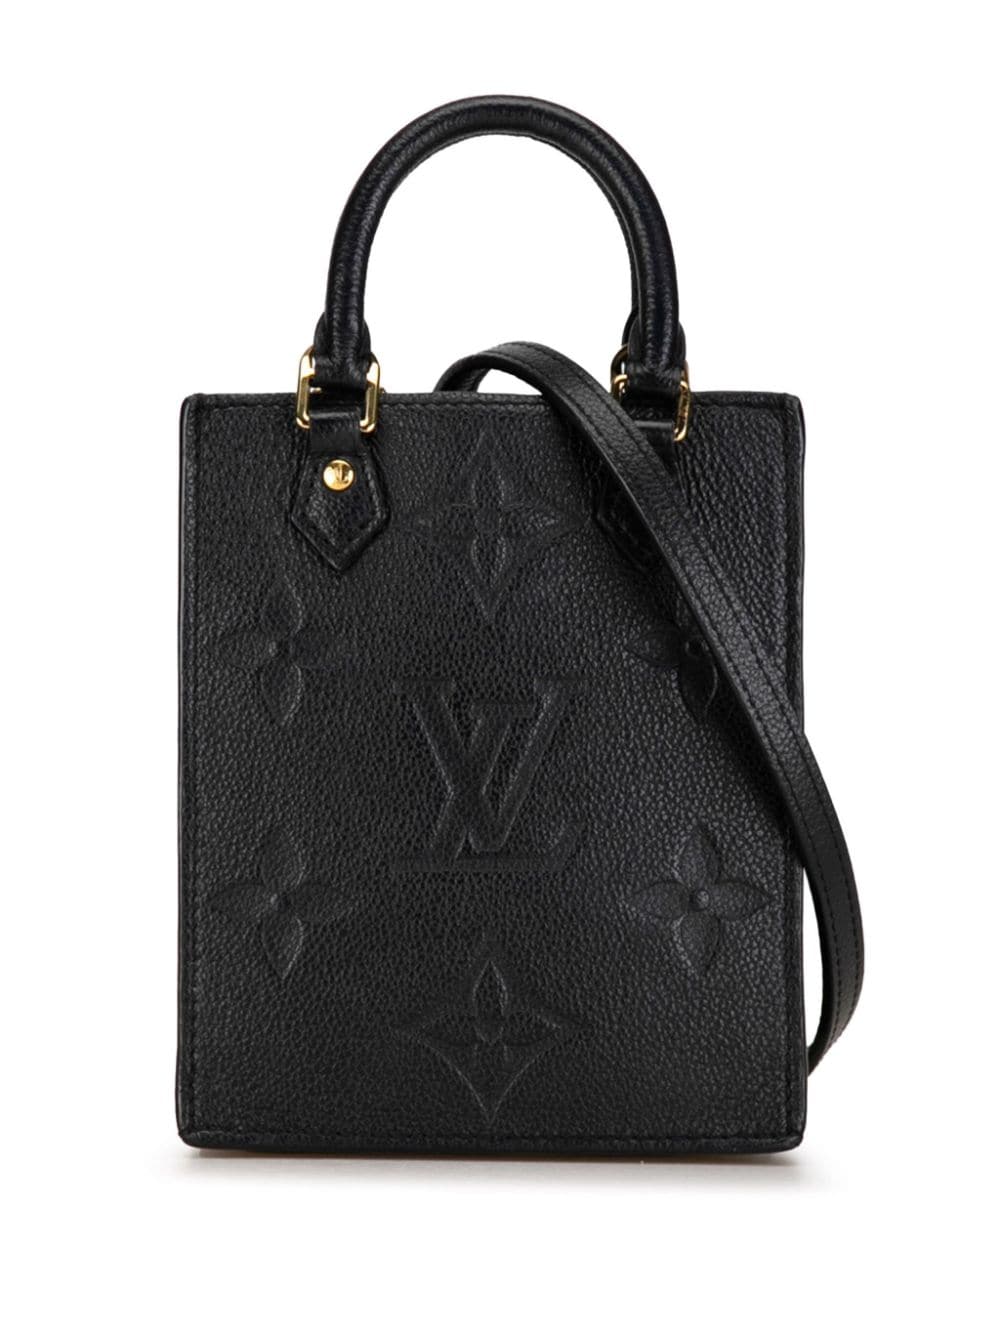 Louis Vuitton Pre-Owned 2020 Monogram Empreinte Petit Sac Plat satchel - Black von Louis Vuitton Pre-Owned